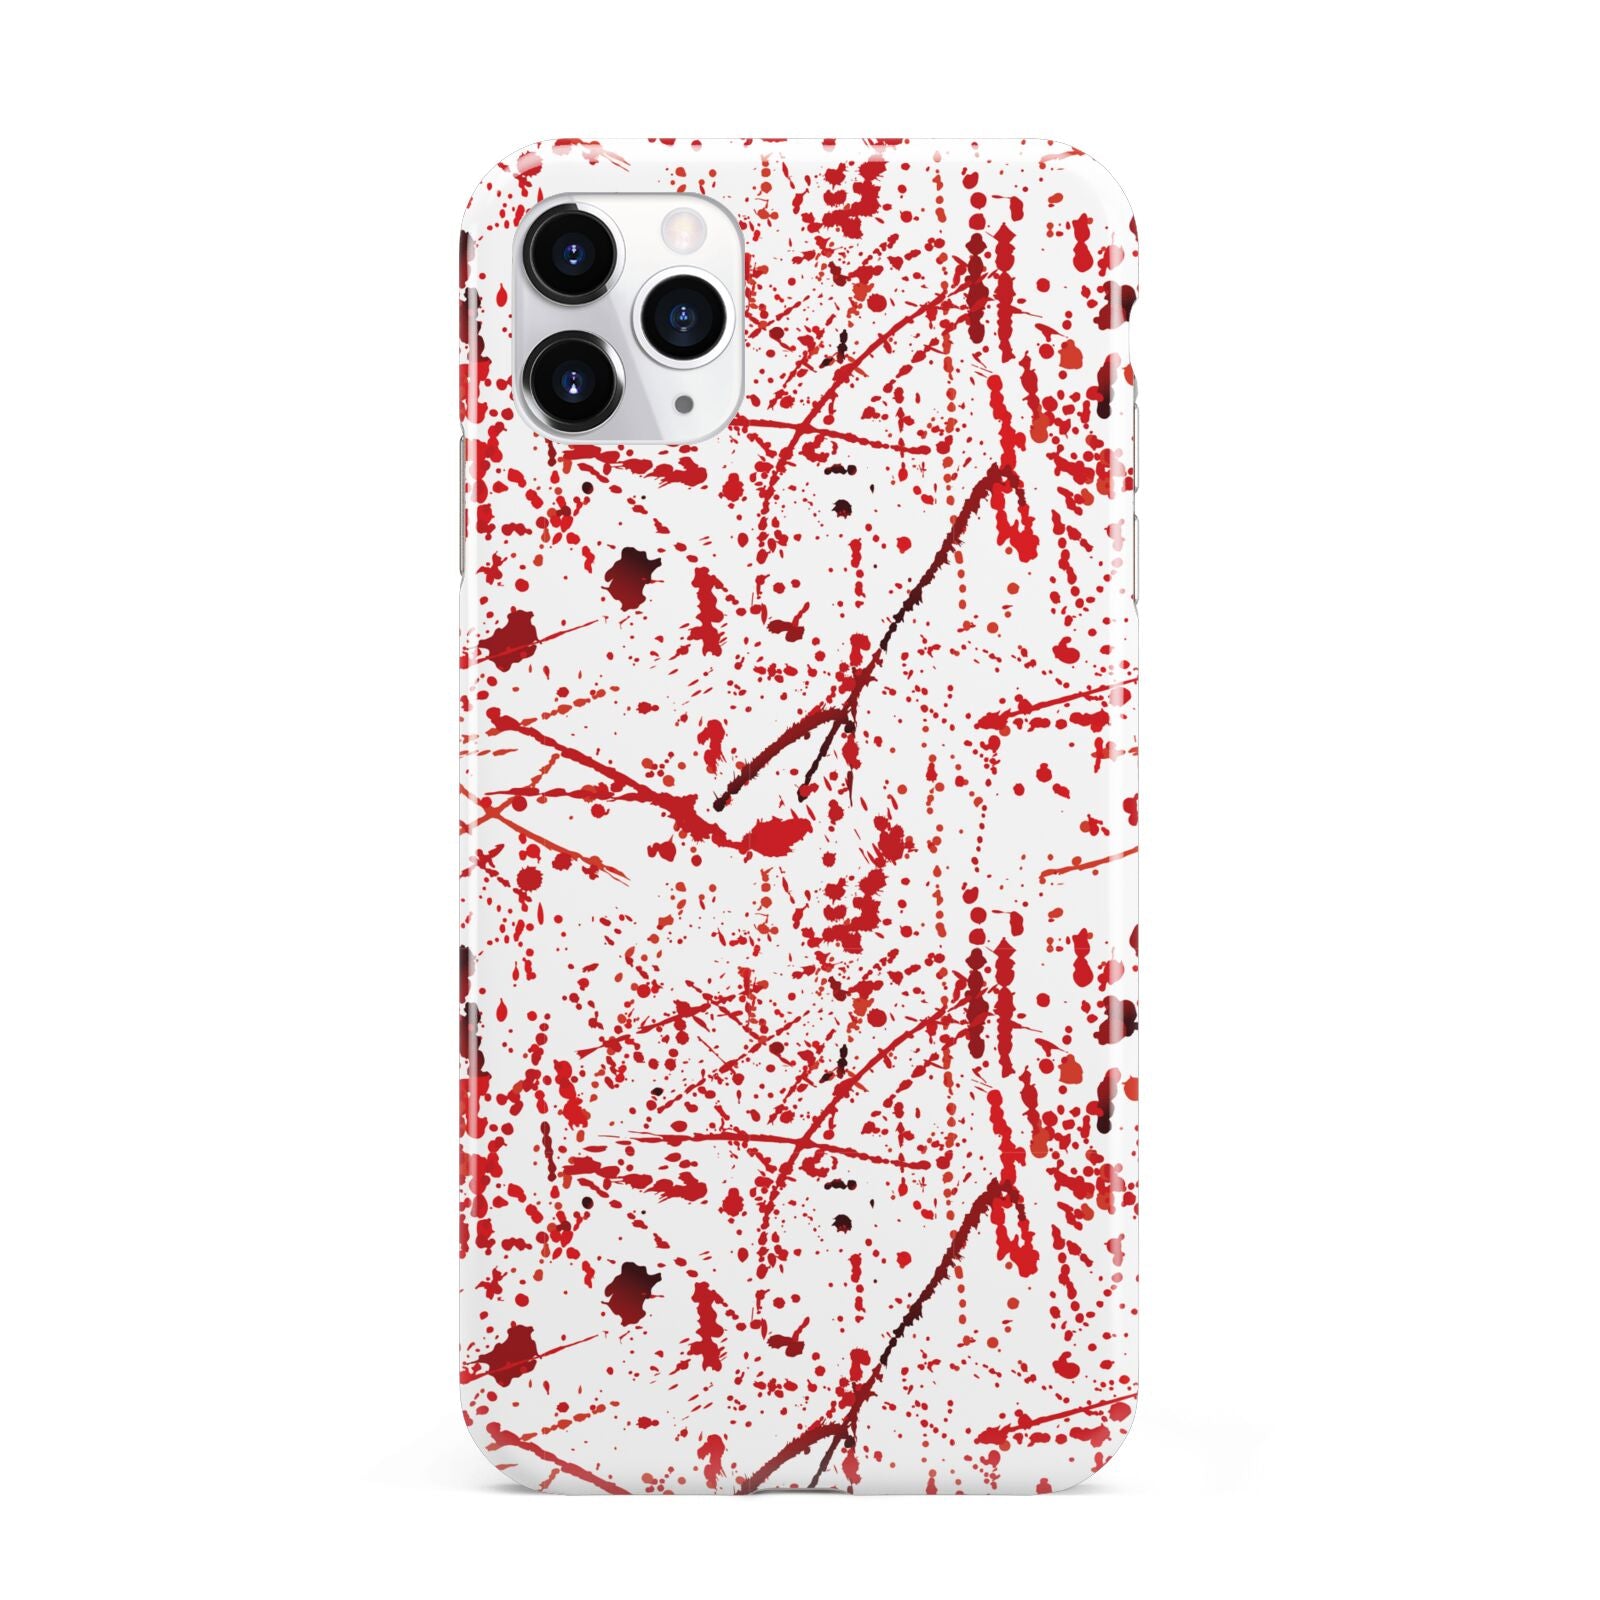 Blood Splatter iPhone 11 Pro Max 3D Tough Case